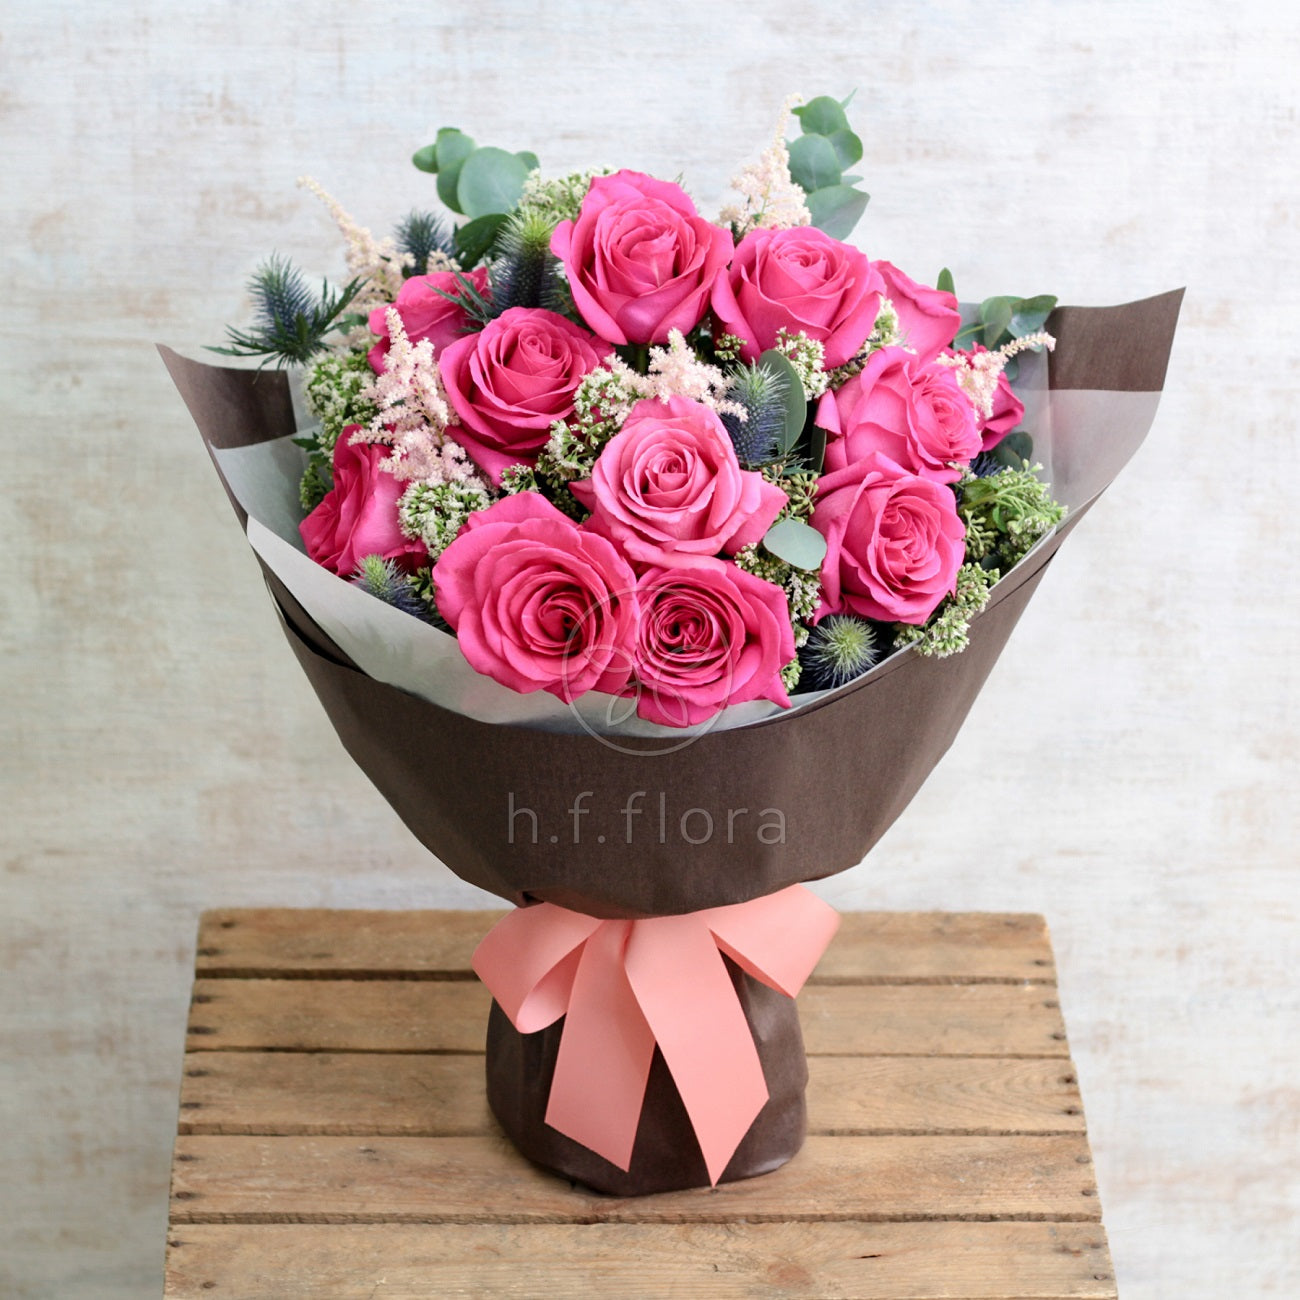 Sweetheart flower bouquet